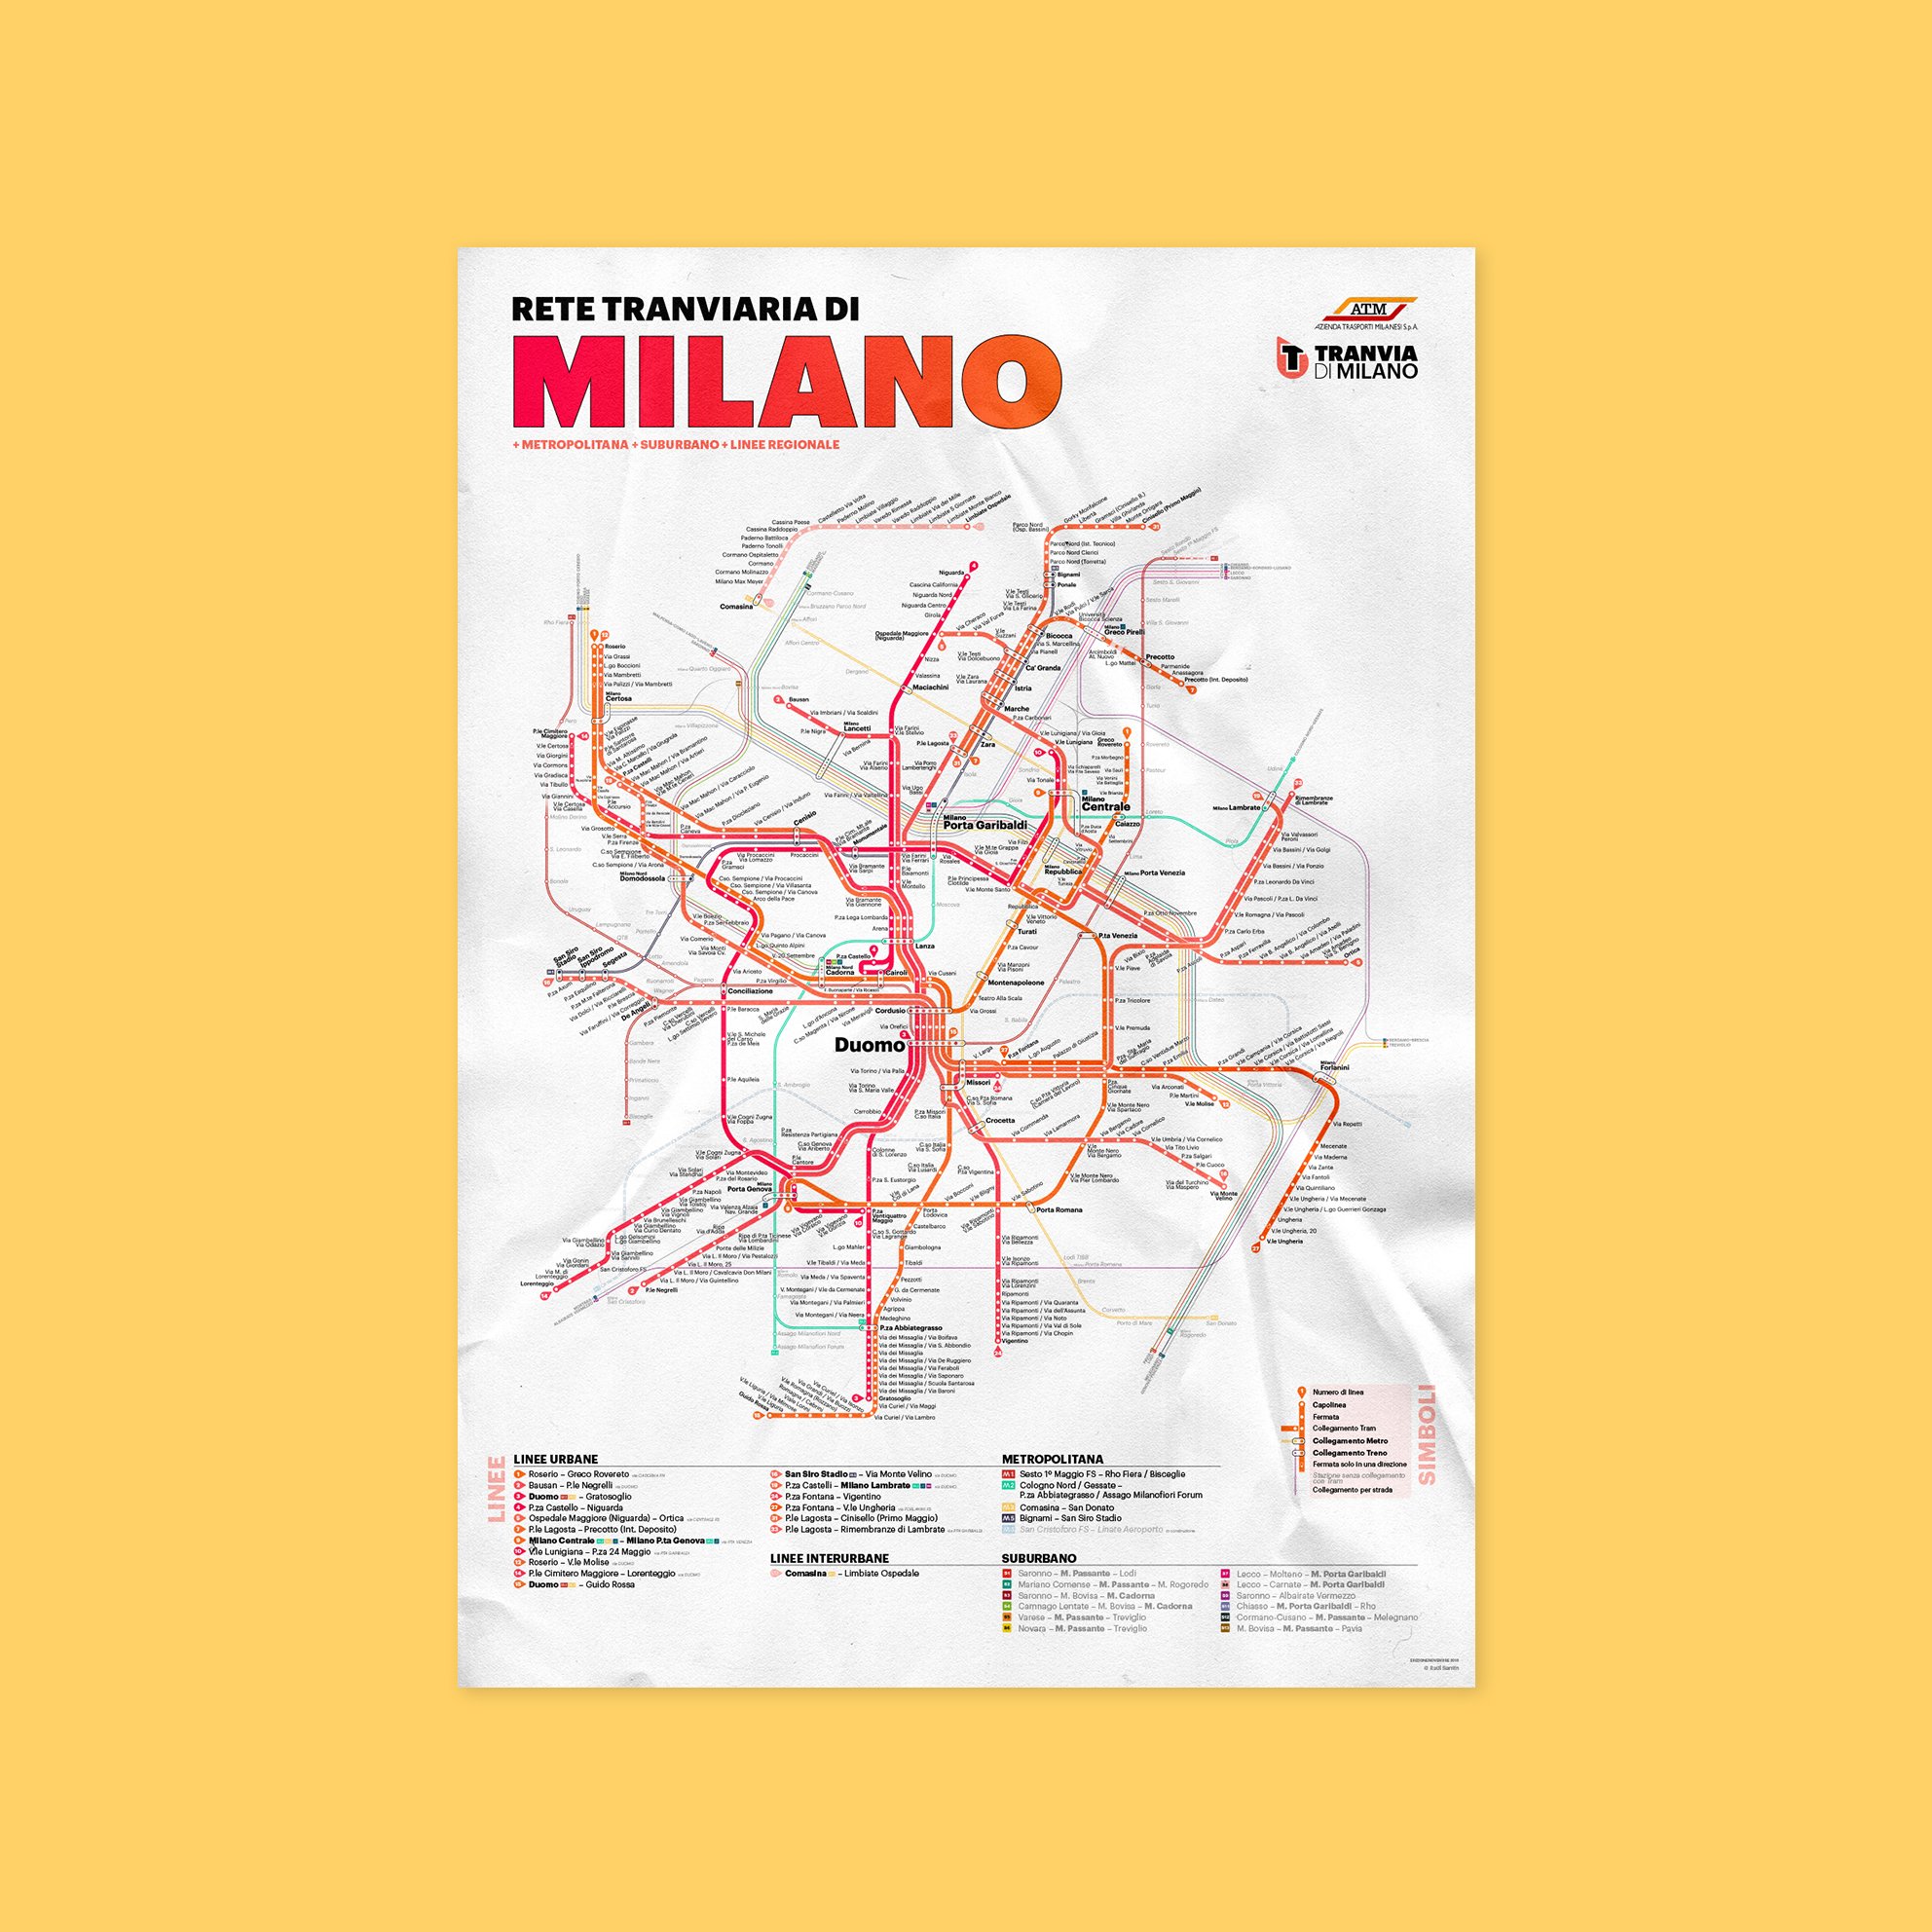 Image of Milan Tram Network Poster